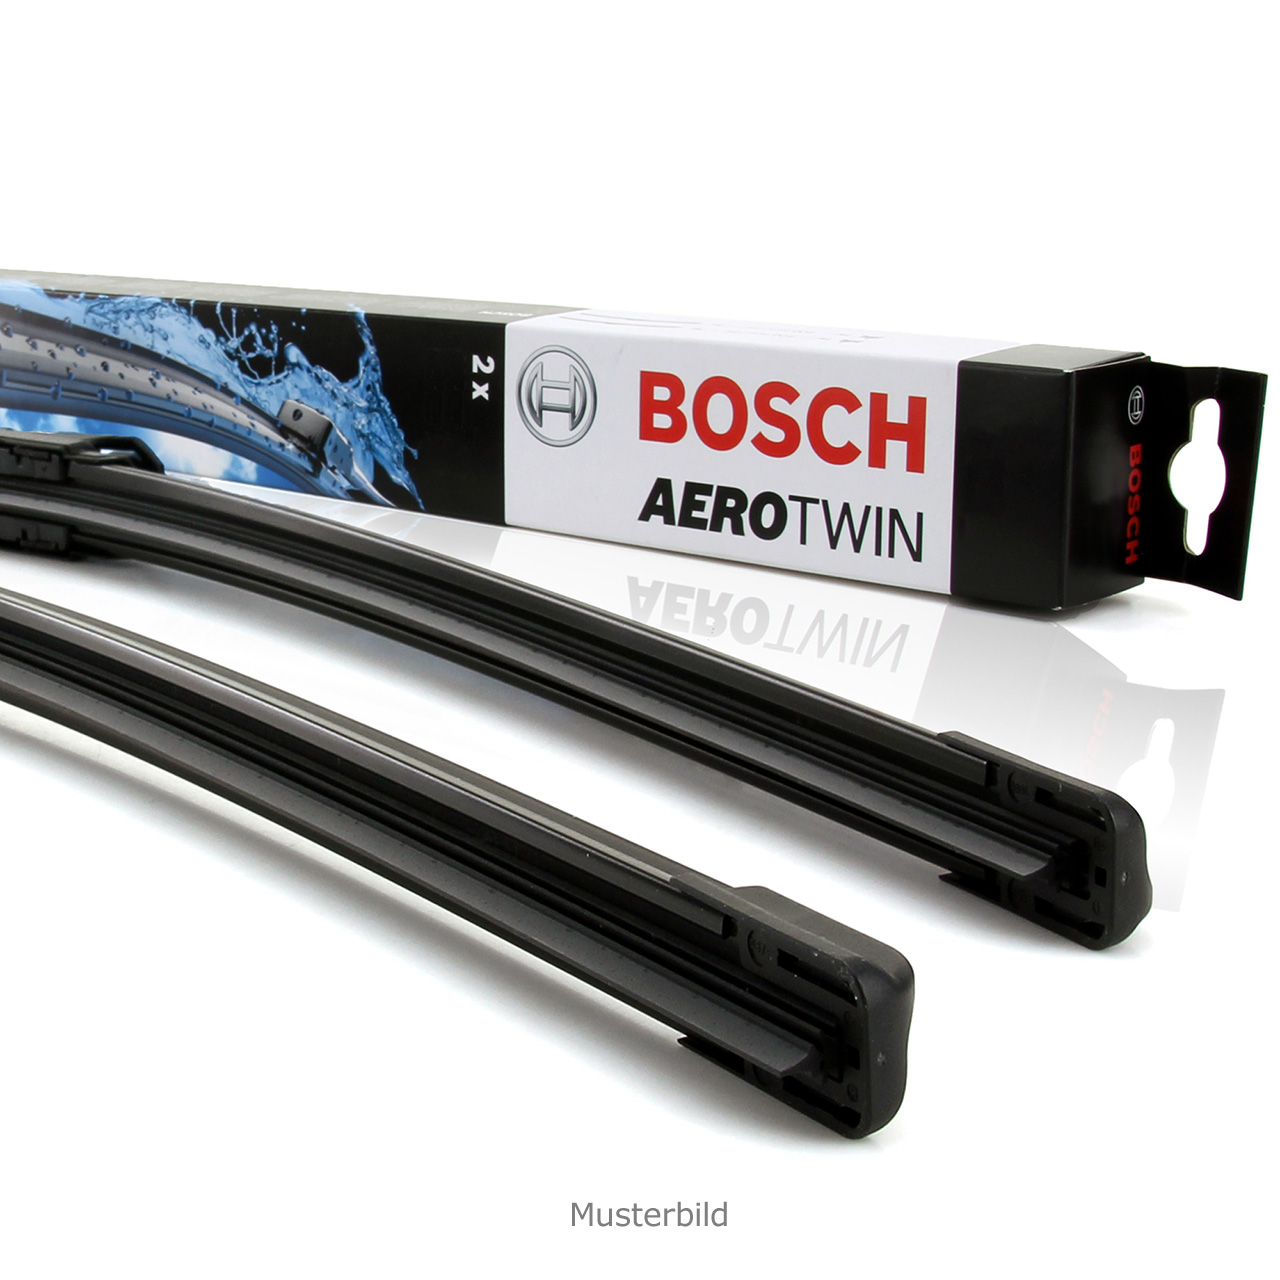 Bosch aerotwin a927s - Die besten Bosch aerotwin a927s auf einen Blick